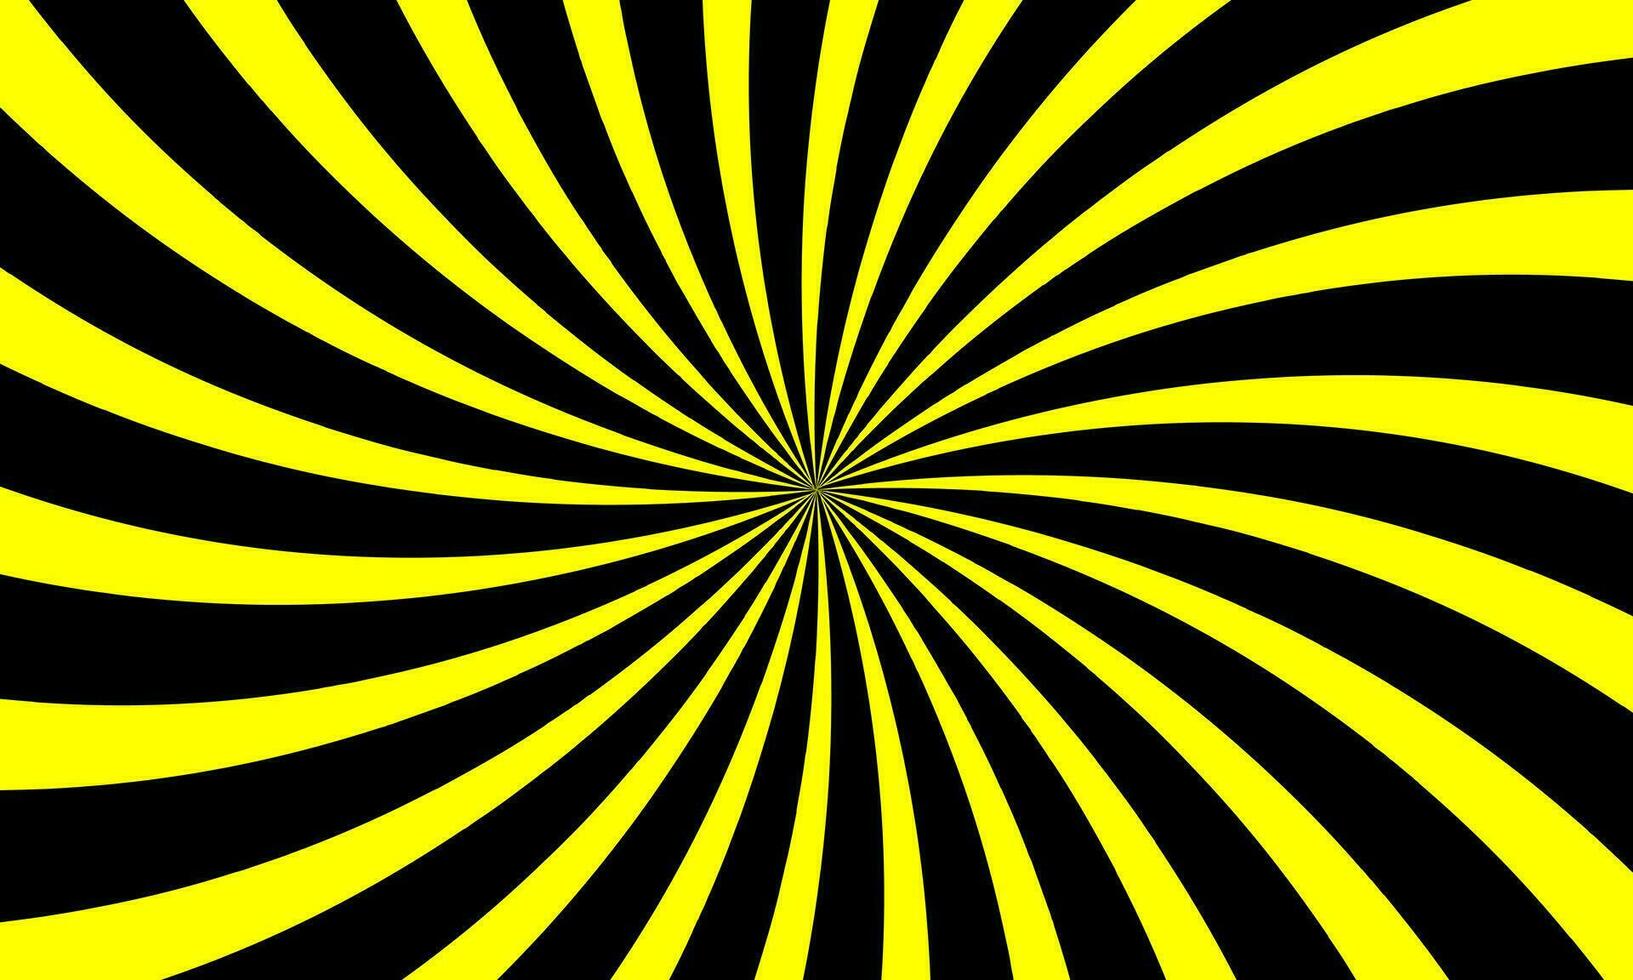 geel en zwart vuurwerk, radiaal, uitstralend lijnen zonnestraal patroon, vector illustratie